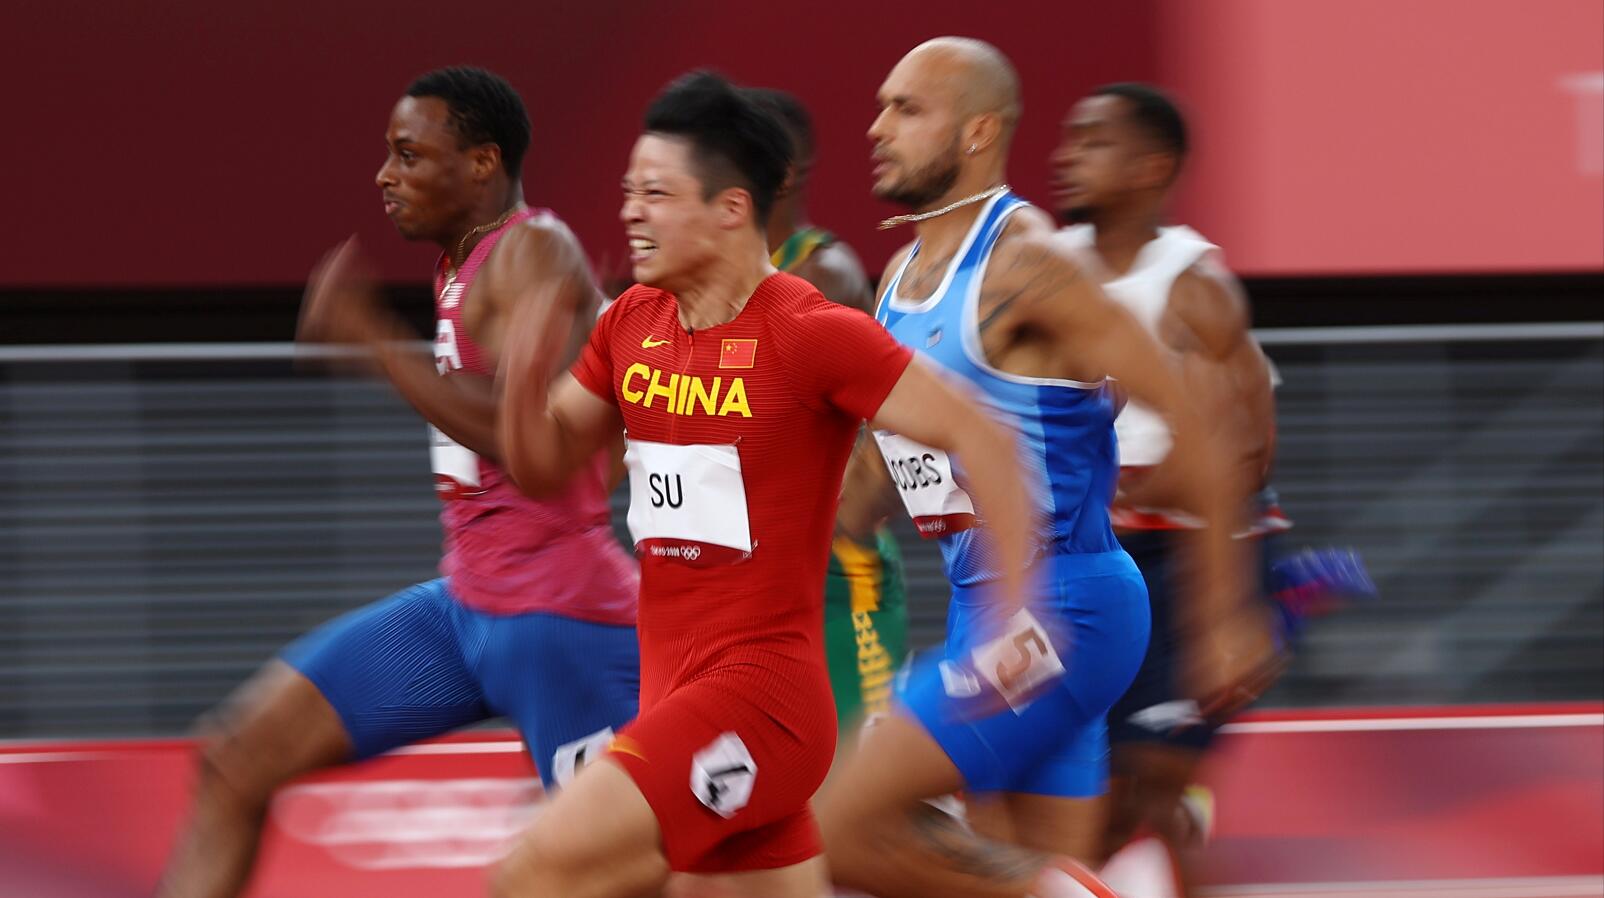 中國名將蘇炳添9秒83奪小組頭名殺入決賽 今晚将冲击奖牌